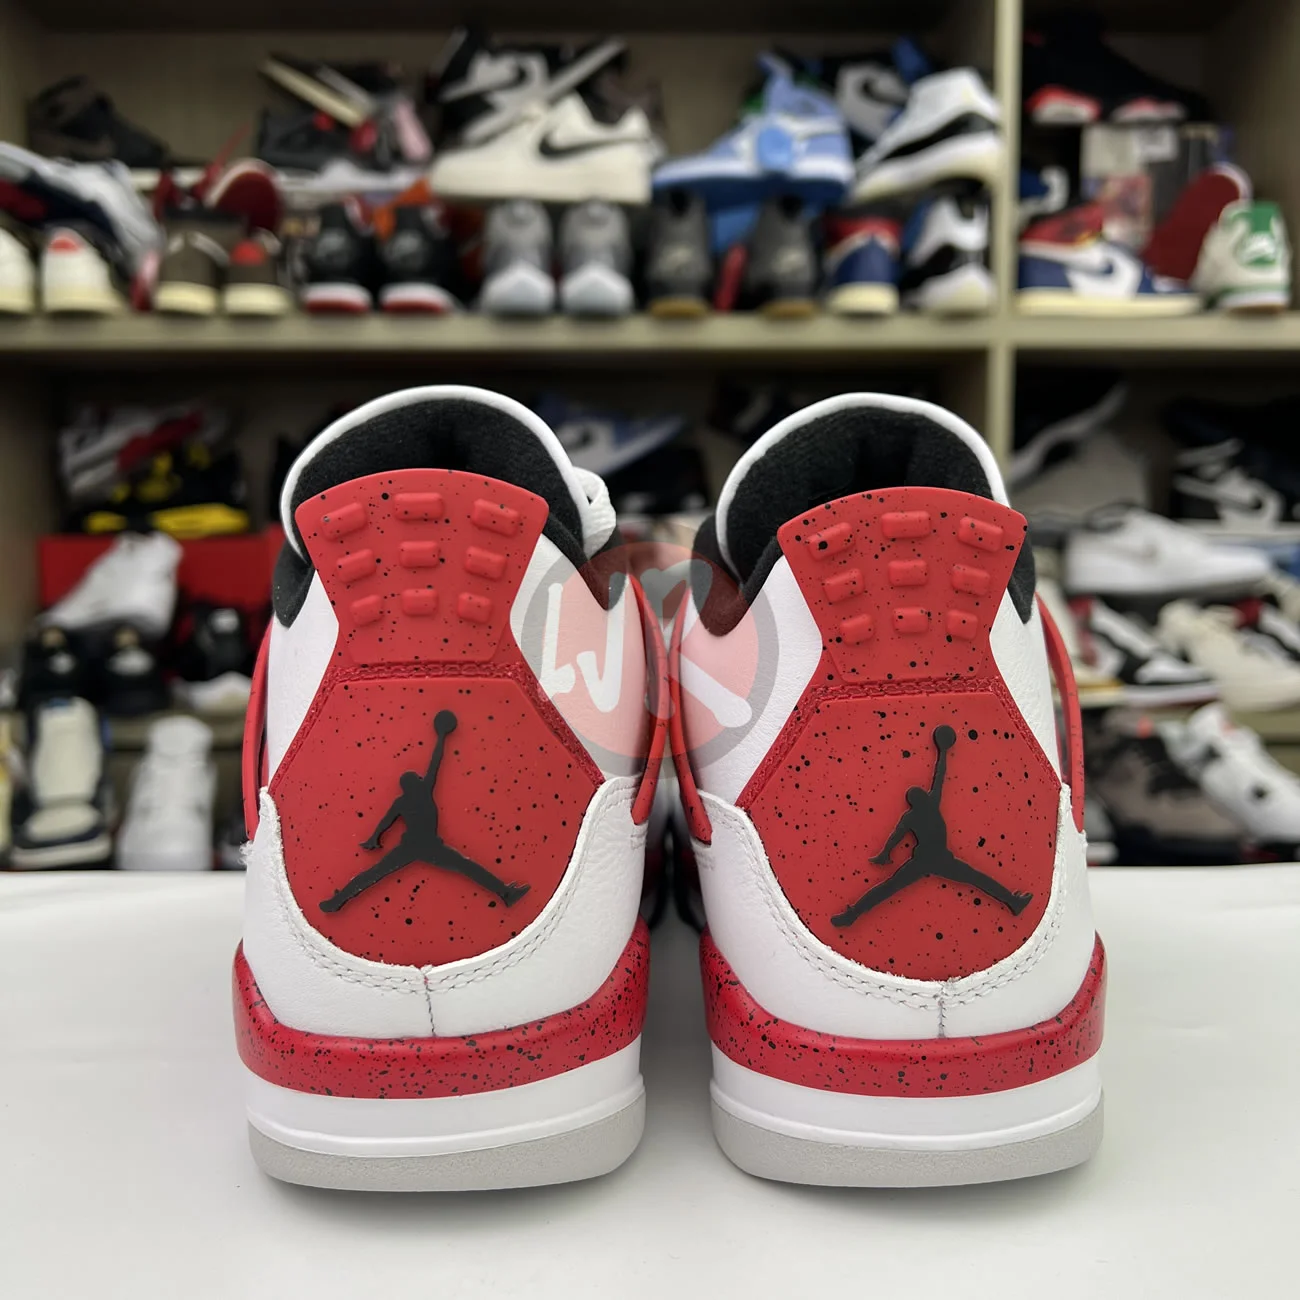 Air Jordan 4 Retro Red Cement Dh6927 161 Ljr Sneakers (5) - bc-ljr.com